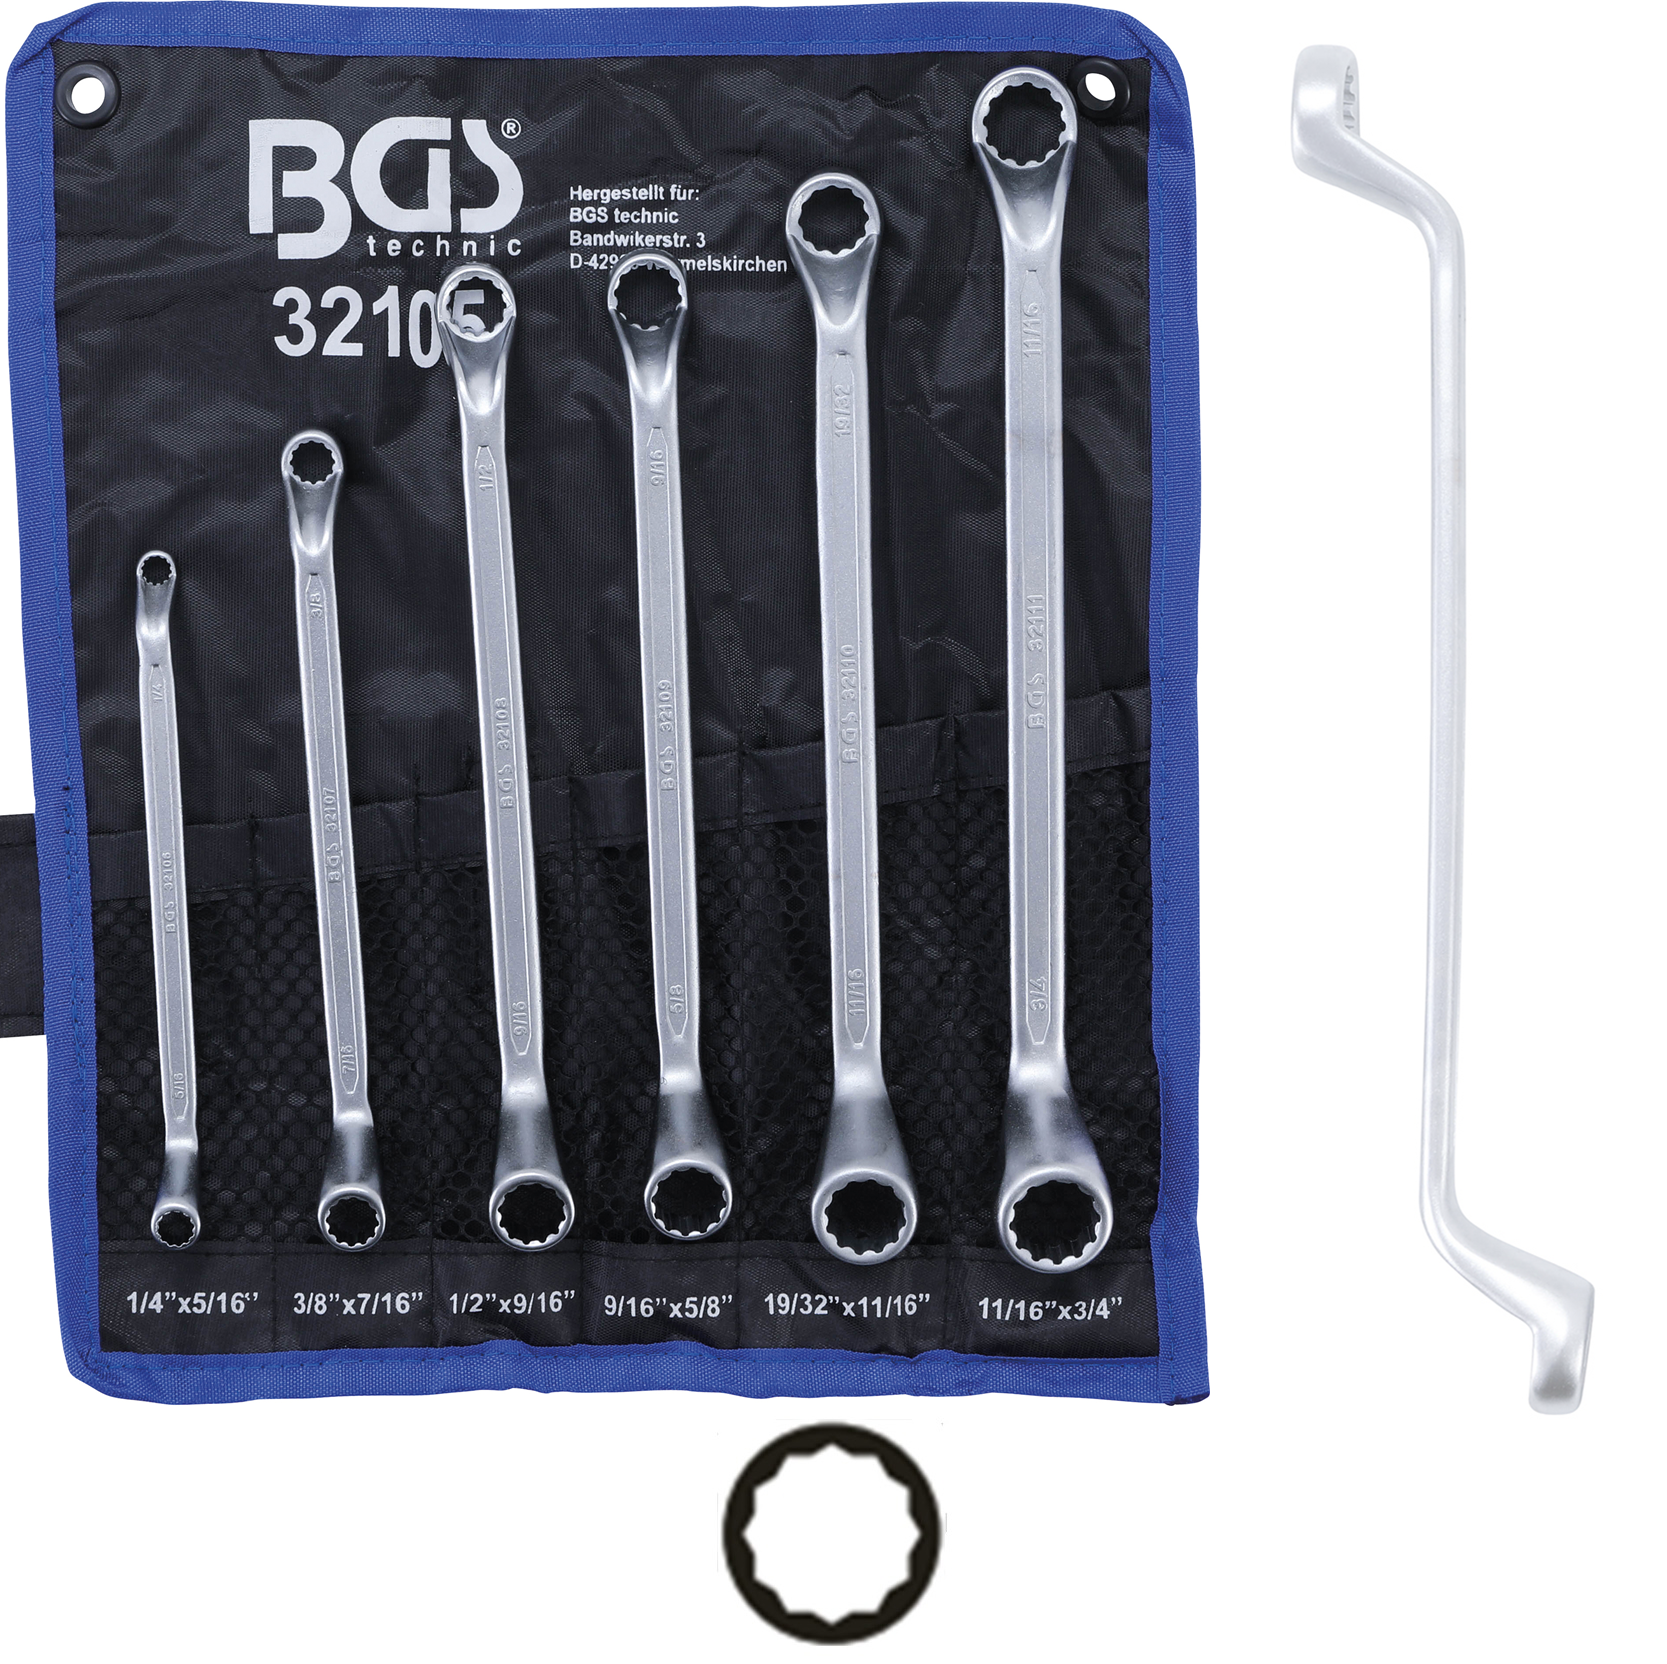 Kľúče očkové obojstranné, vyhnuté, palcové 1/4" - 3/4", 6 dielov, BGS 32105